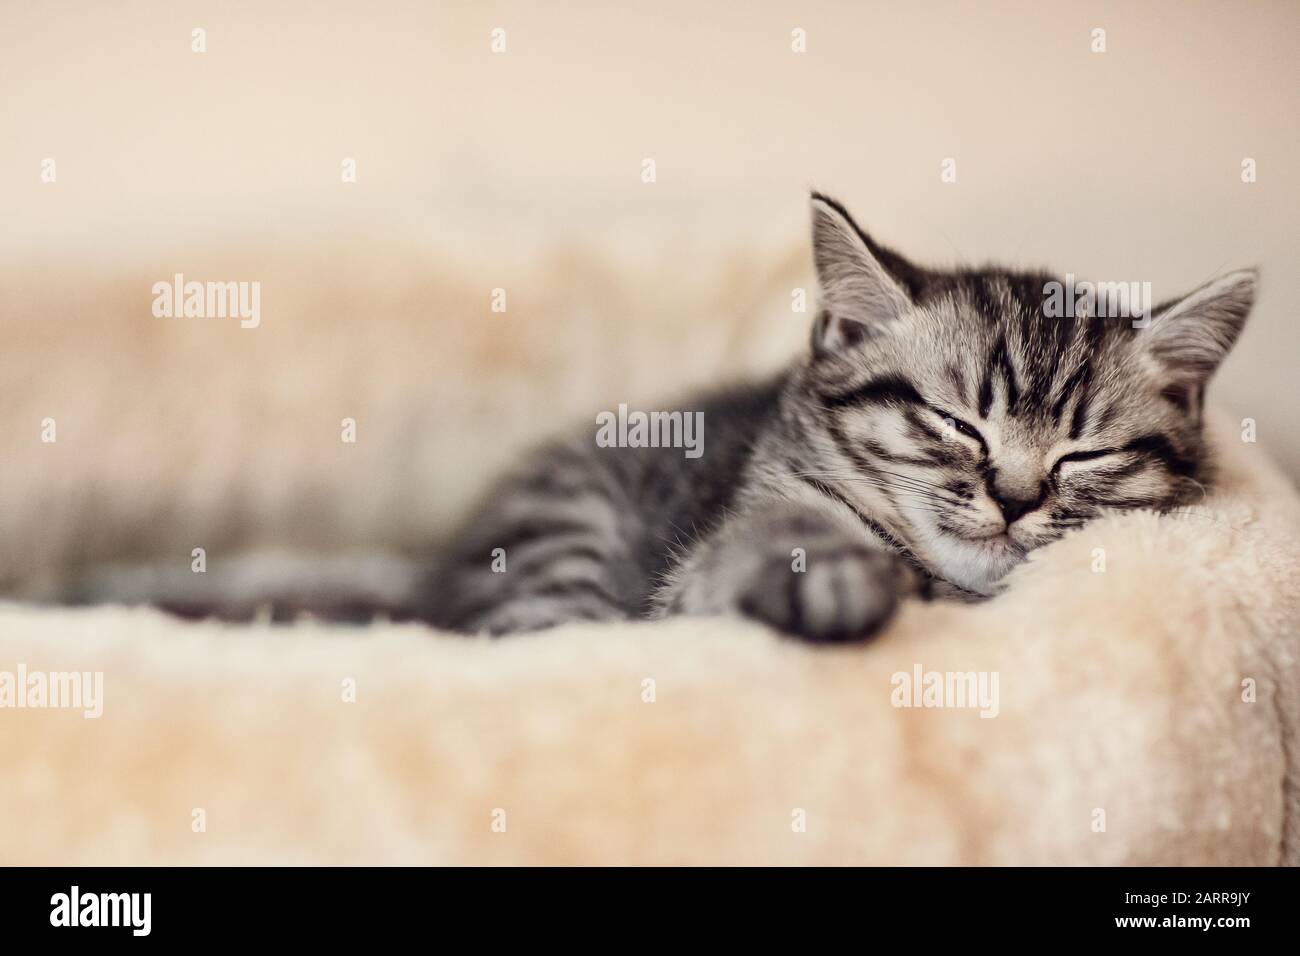 British shorthair, cat, silver tabby, beautiful kitten, männlich, short-haired cat, pet, Kleine Babykatze liegt gemütlich und schläft, sleepy Stock Photo